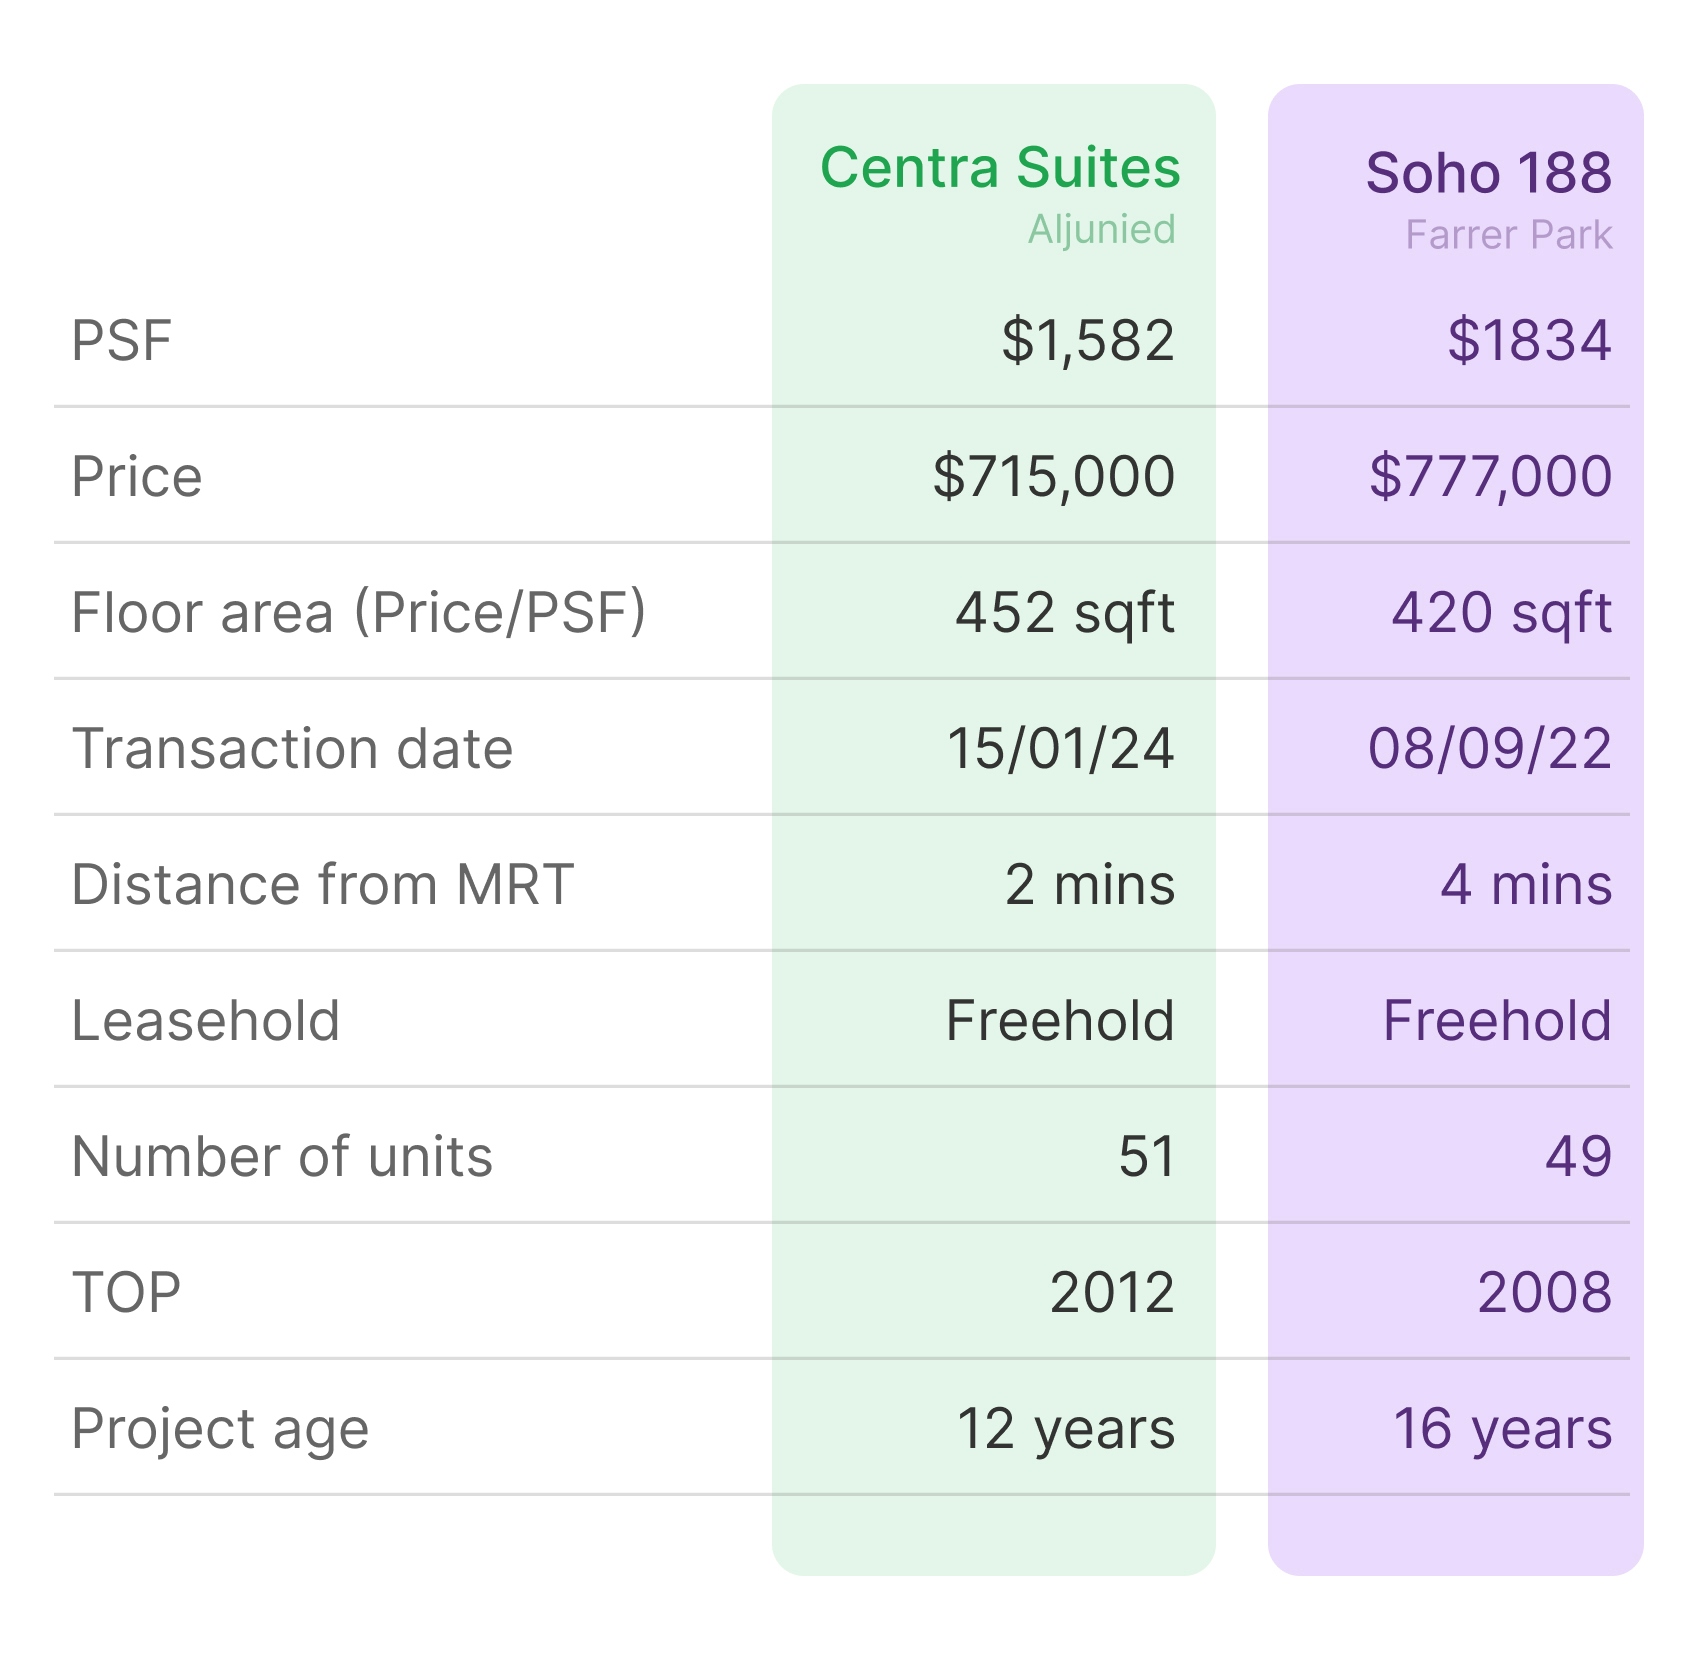 Centra Suites vs Soho 188 comparison table